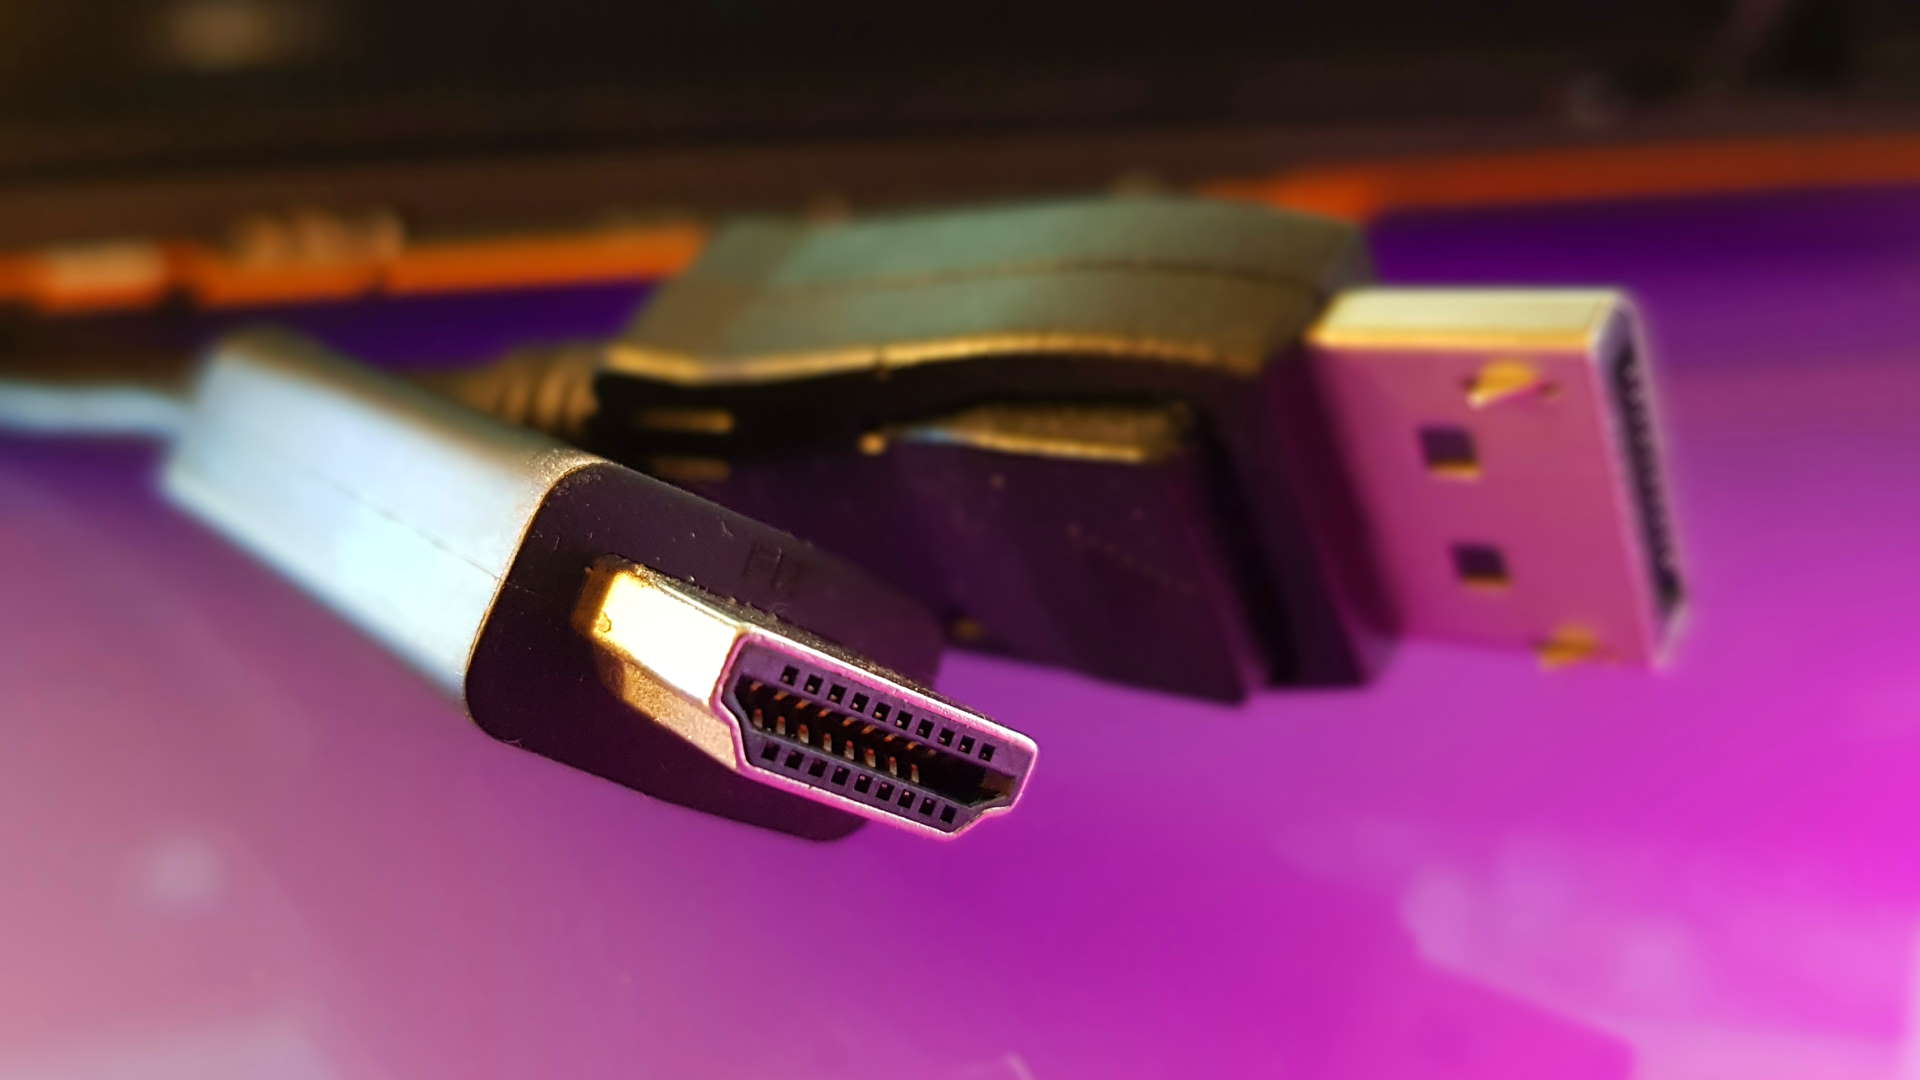 HDMI 2.1 vs. DisplayPort 2.0: An In-Depth Comparison